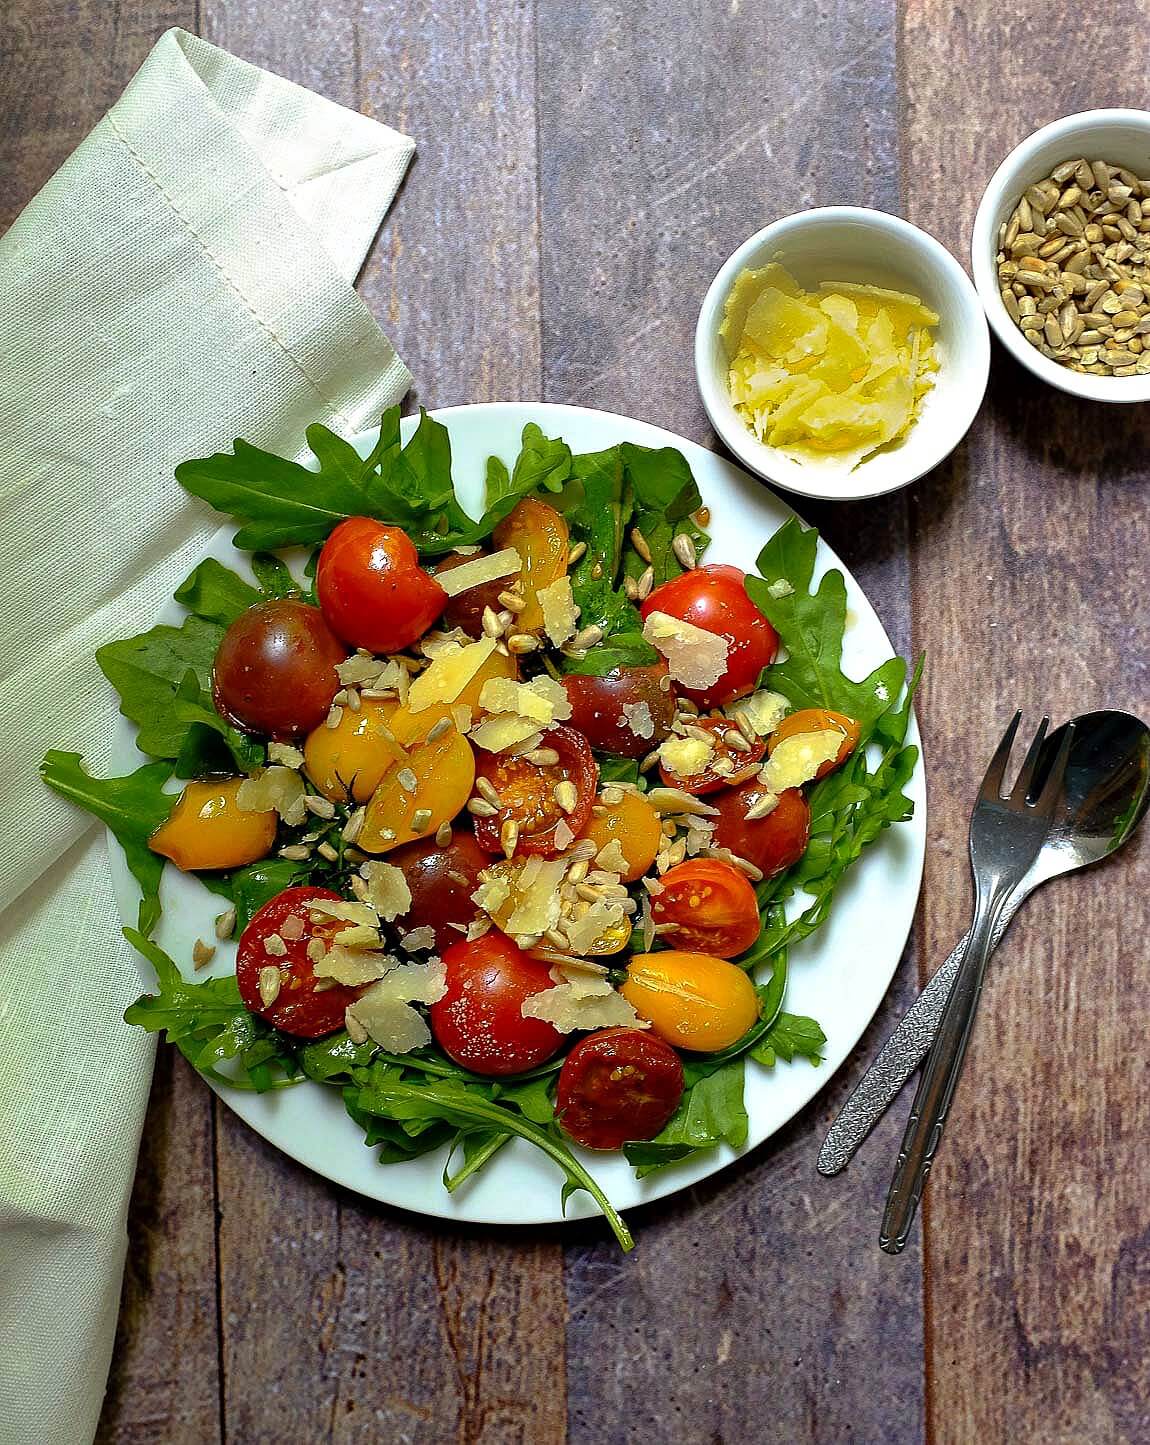 Dieser 15 - Minuten-Salat mit karamellisierten Tomaten, Rucola und Parmesan ist ein aromatischer Gaumenschmaus. Weniger Aufwand - tolles Ergebnis.